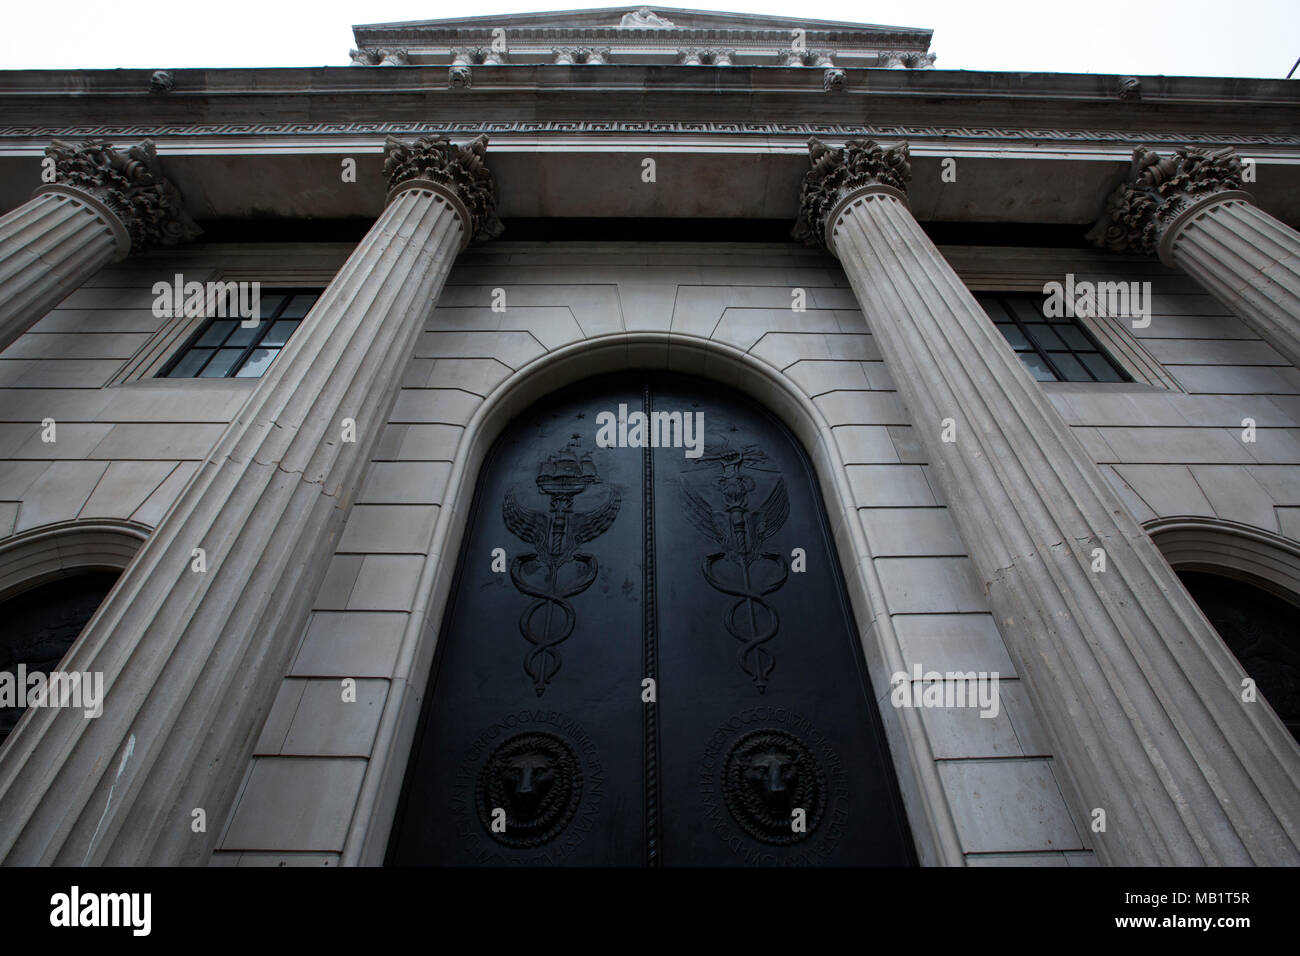 Les portes de la banque d'Angleterre, Threadneedle Street, la lutte anti-terroriste au Pays de Galles par des portes en génie-cyrus-RW Group et Rhino Portes, Ville de London Banque D'Images